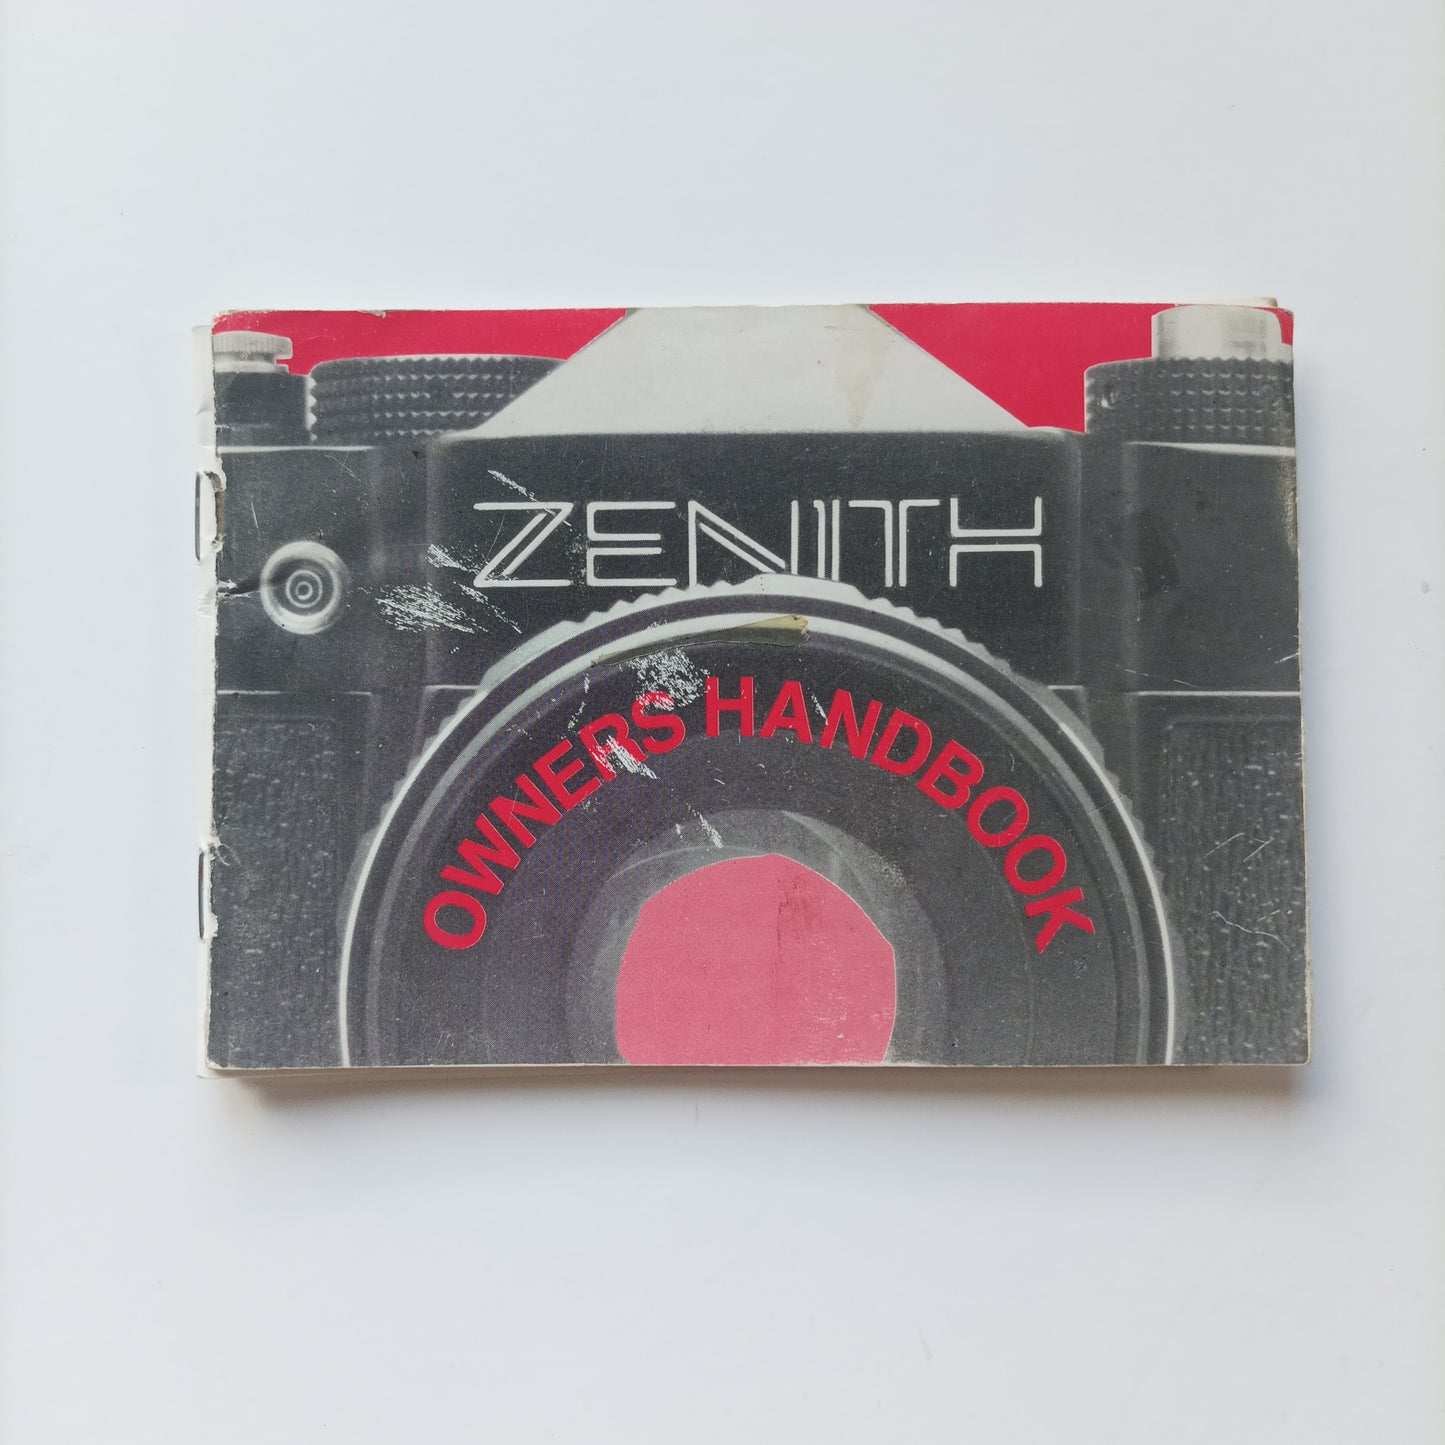 Zenith owners handbook